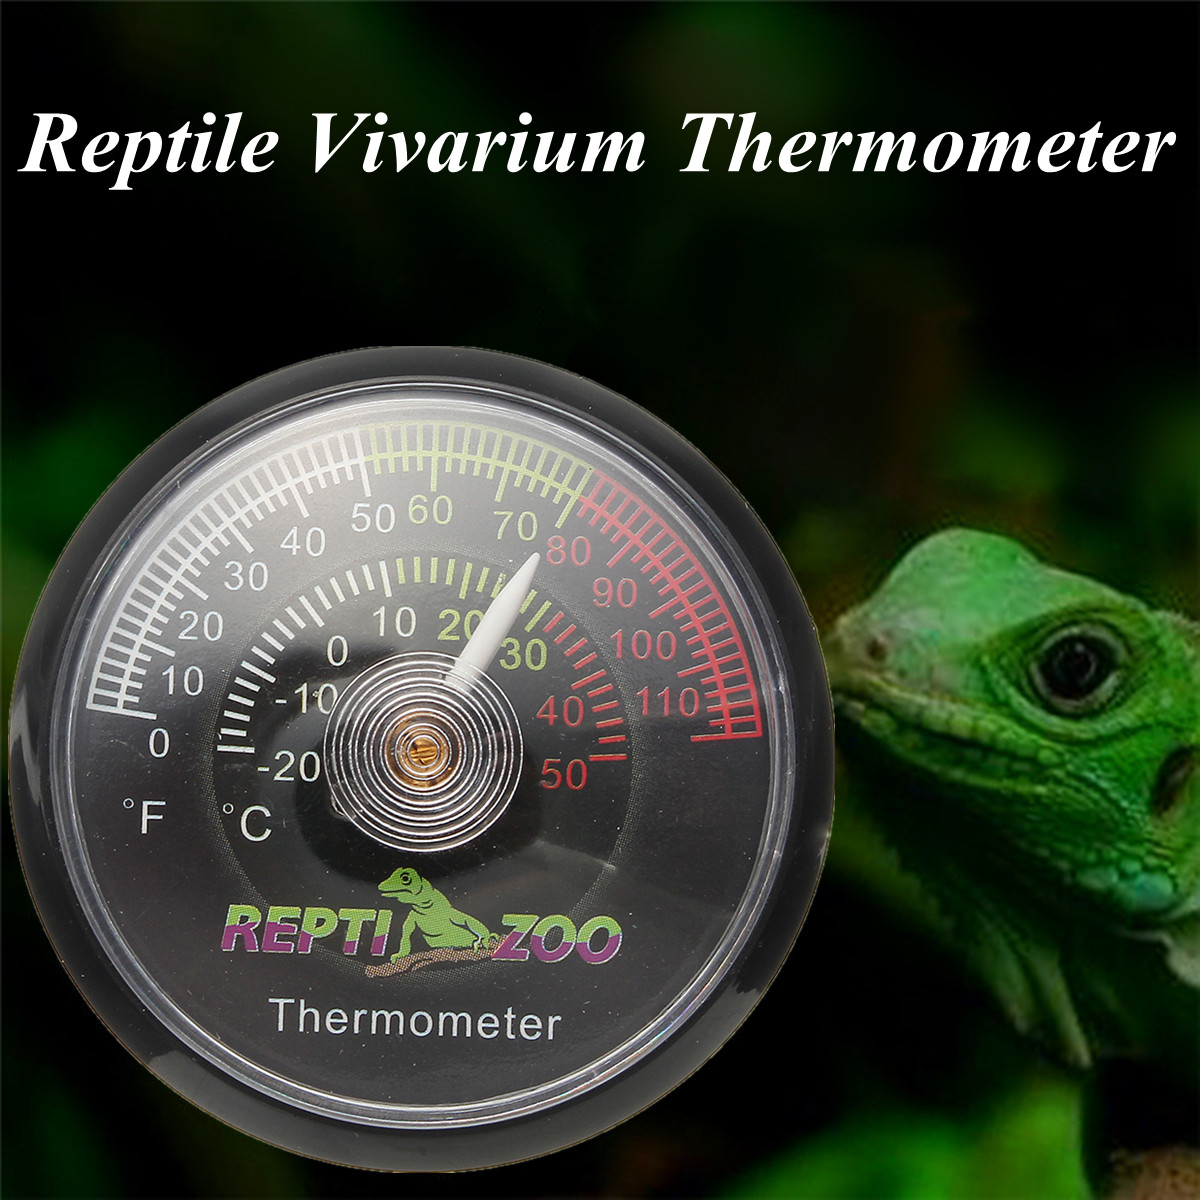 Reptile-Tortoise-Vivarium-Terrarium-Temperature-Meter-Thermometer-with-Colour-Codes-1263986-1